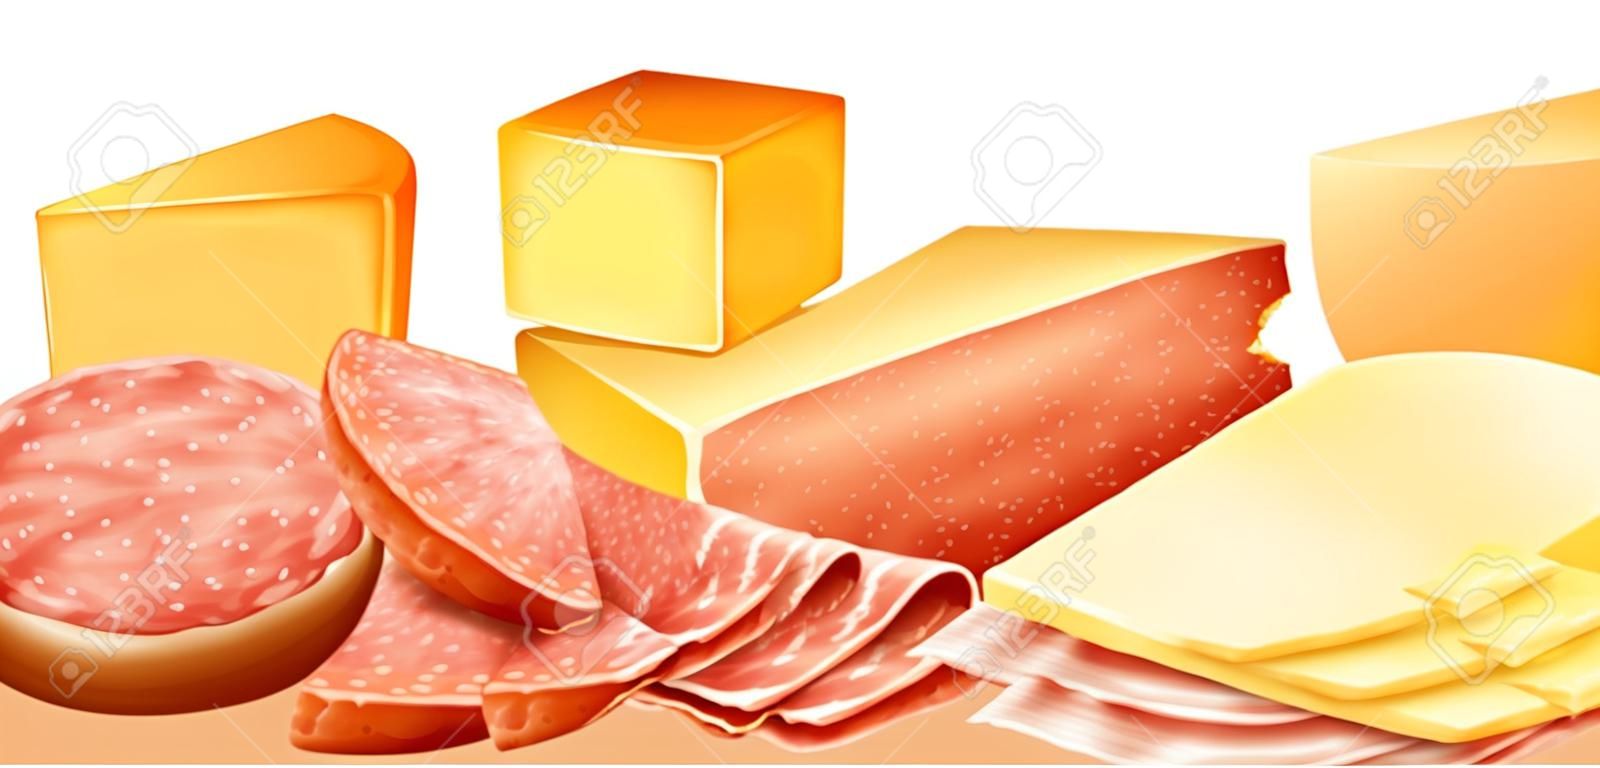 Сыр и различные виды мясных продуктов иллюстрации